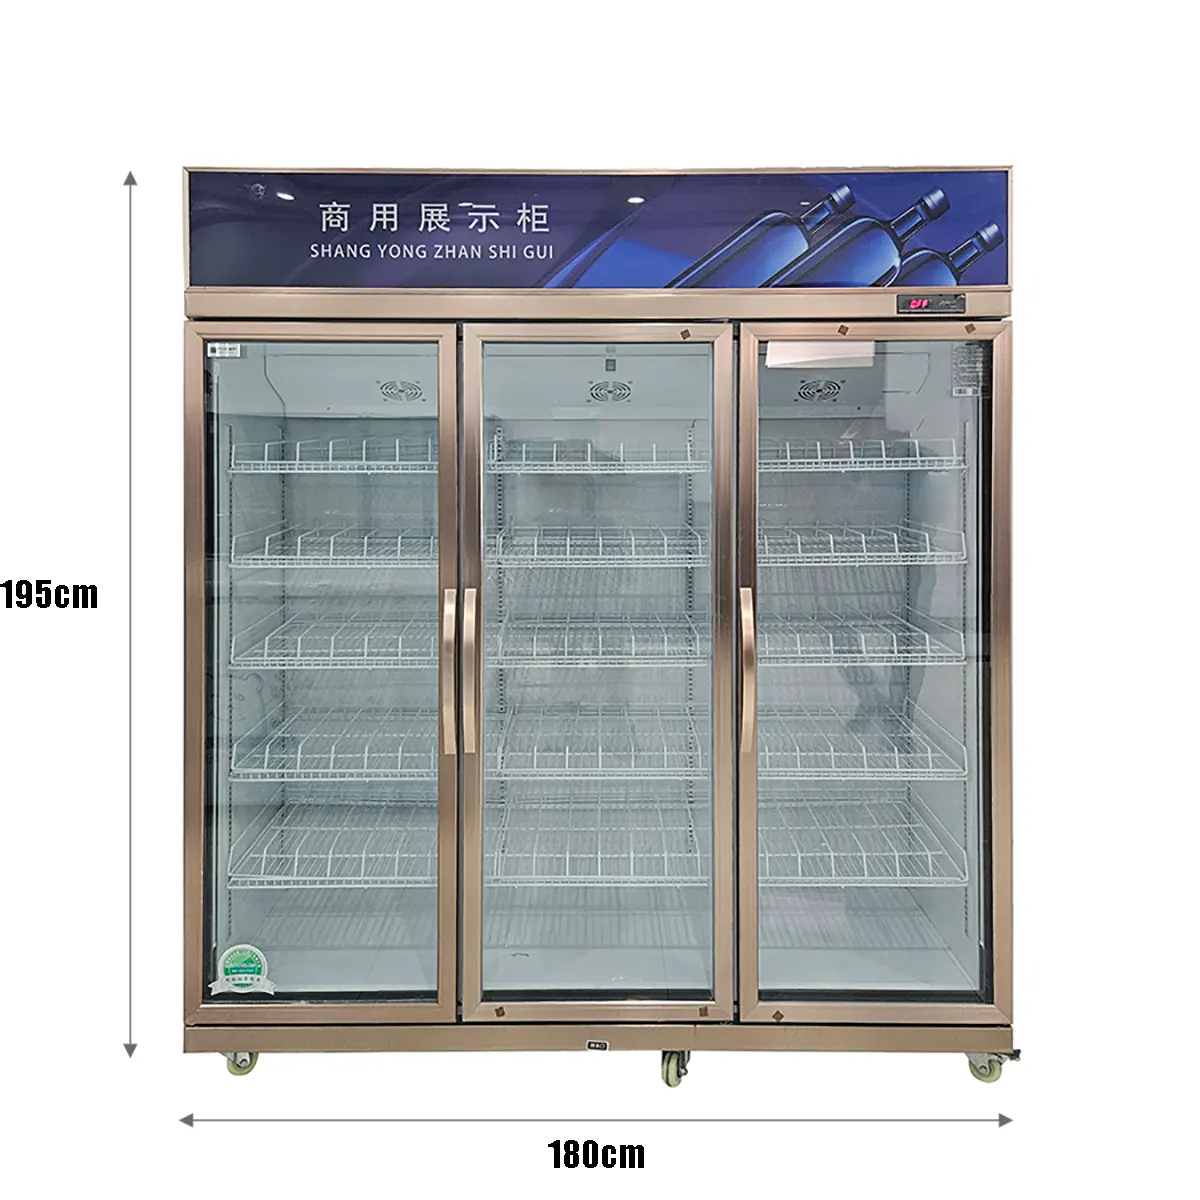 Тройная дверь, большая емкость, вертикальный вентилятор для напитков, охлаждающий тройной дверной охладитель для холодных напитков с цифровой панелью